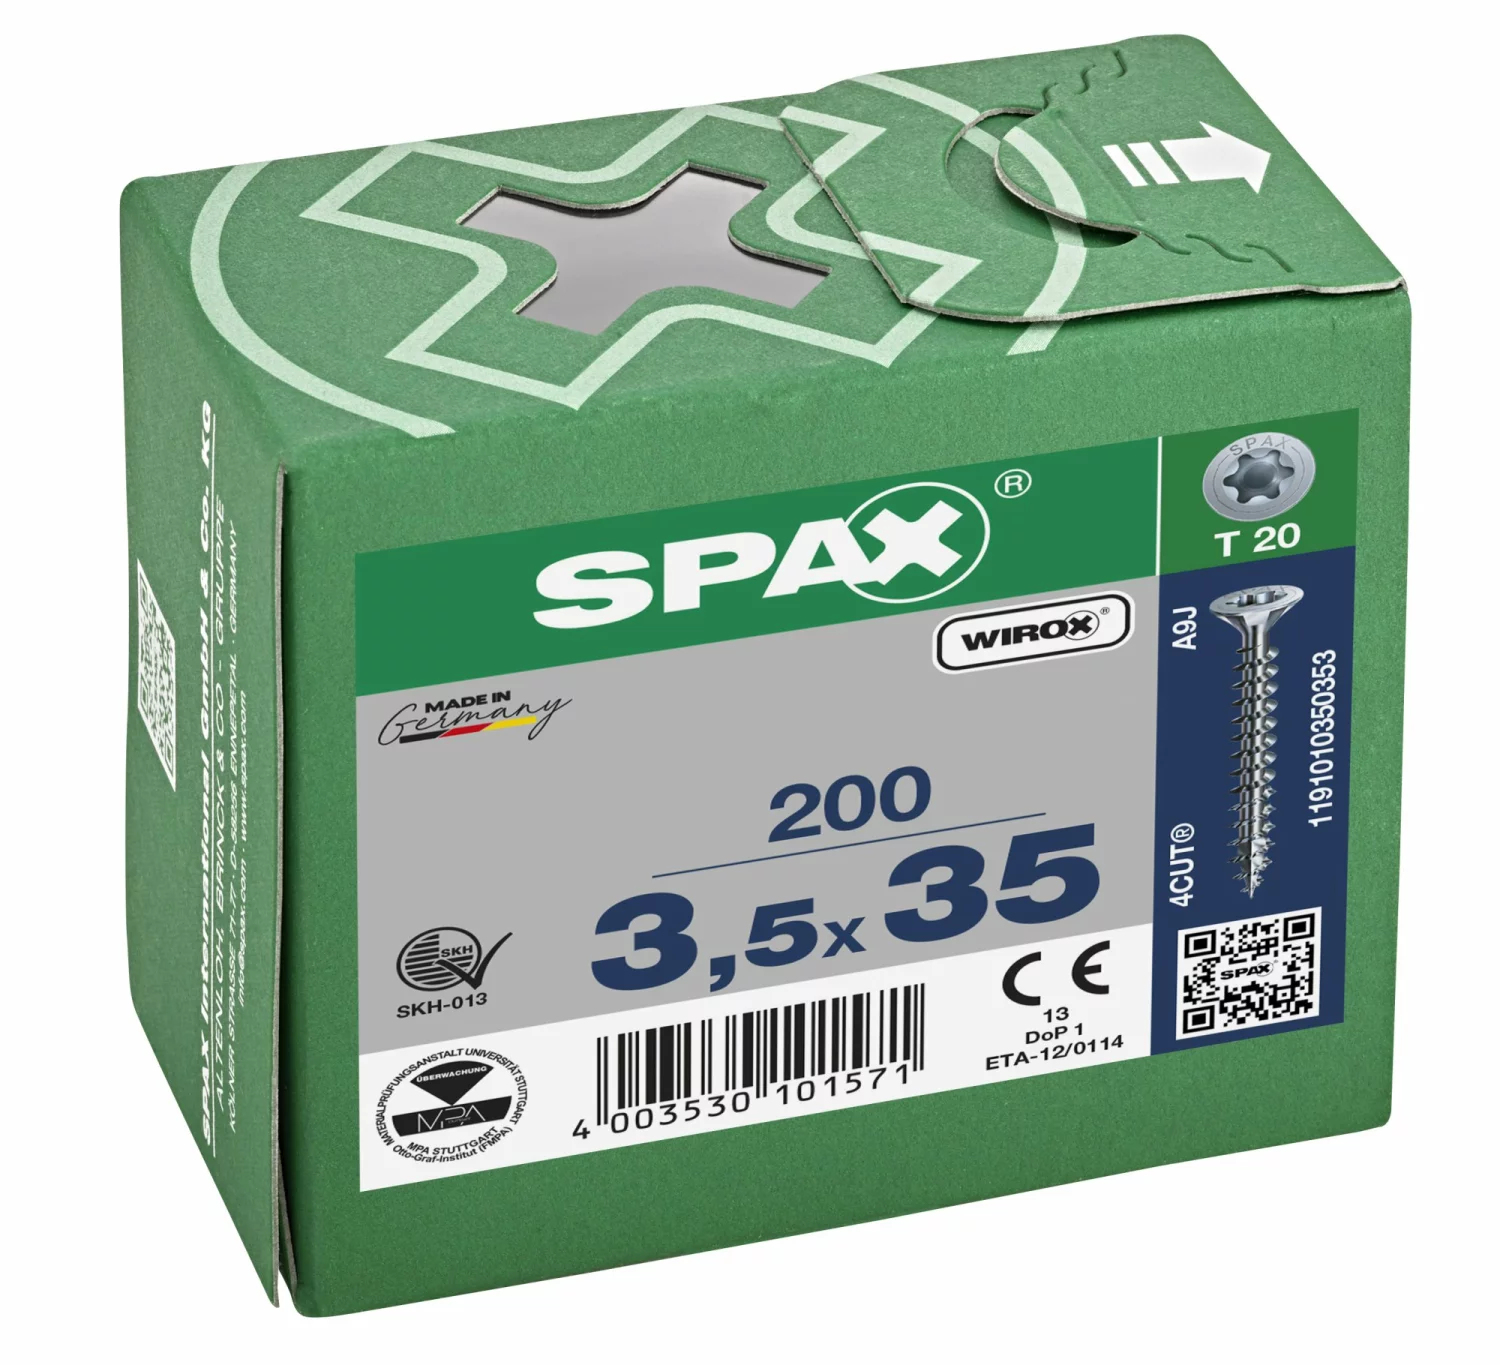 SPAX 1191010350353 - Vis universelle, 3,5 x 35 mm, 200 pièces, Tête centrante, Tête fraisée, T-STAR plus T20, 4CUT, WIROX